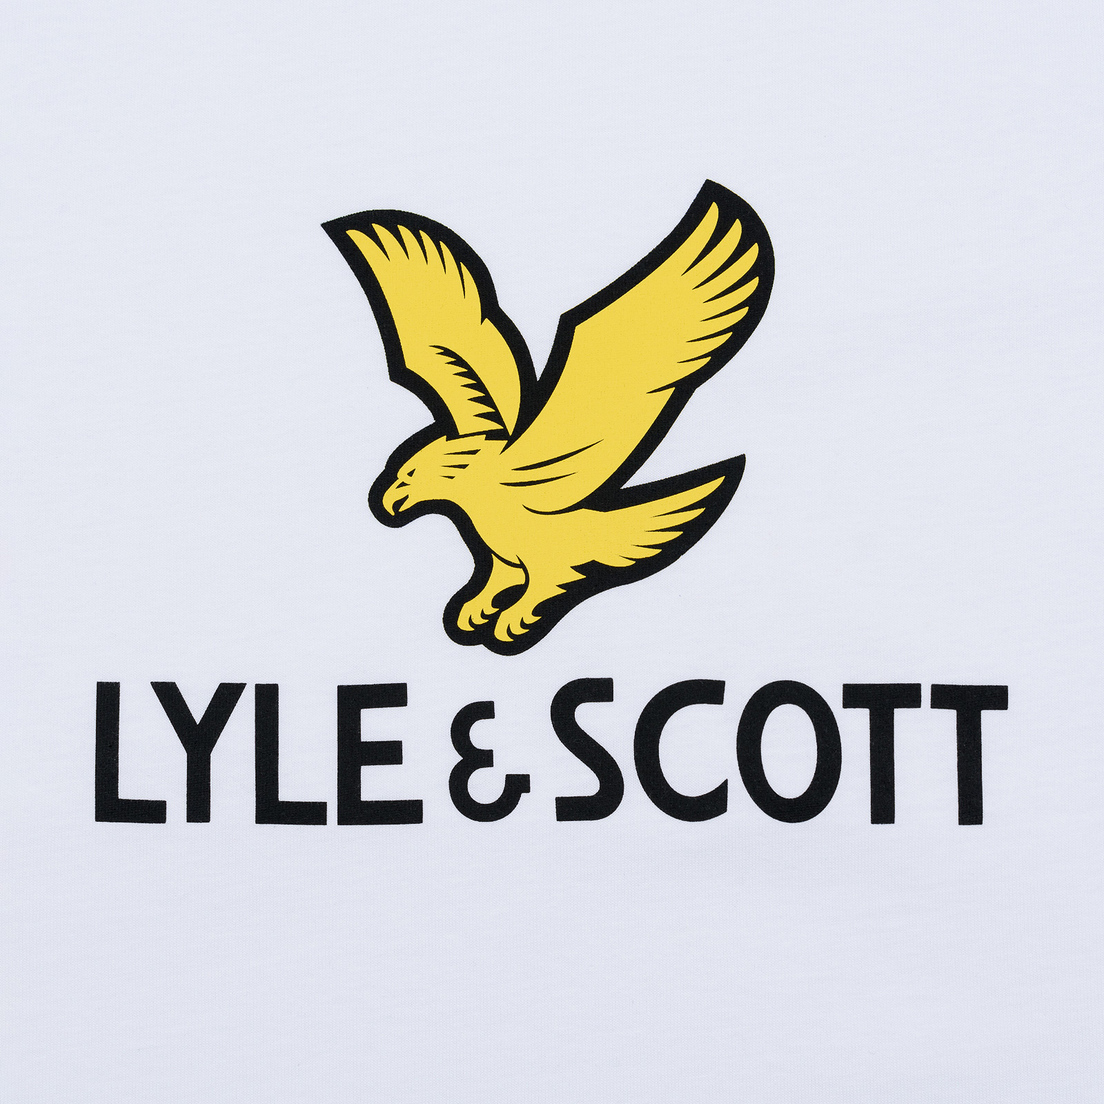 Lyle & Scott Мужская футболка Logo